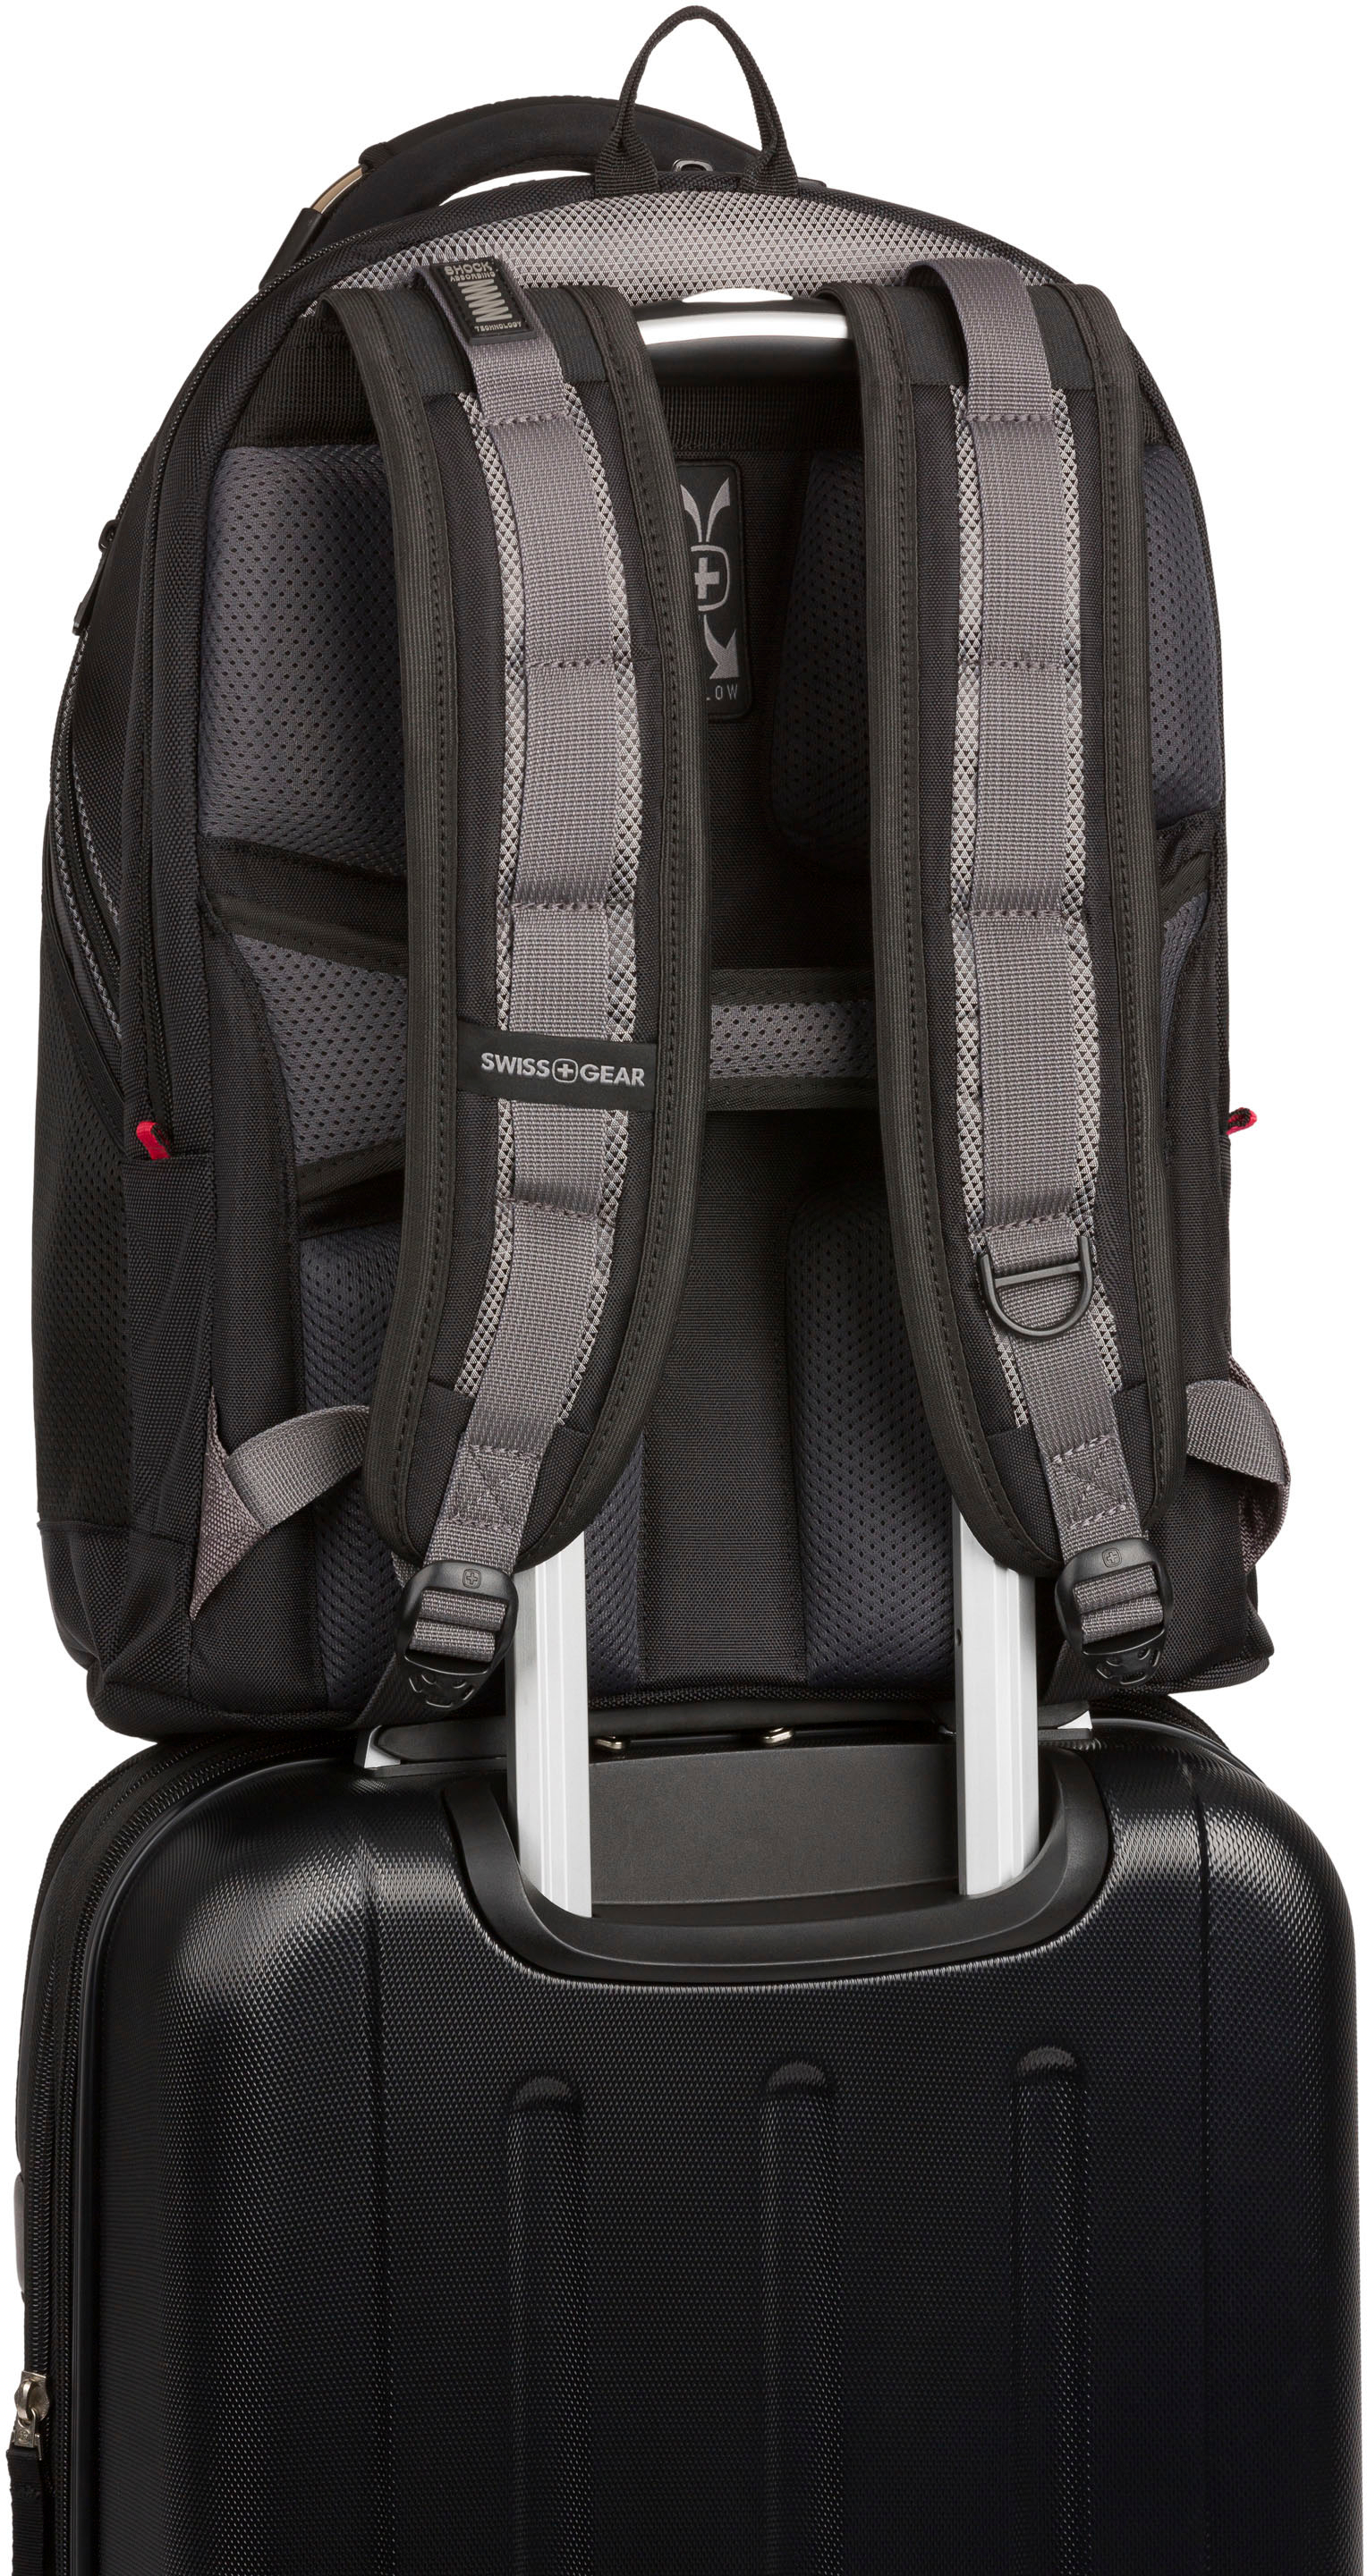 SwissGear Synergy Backpack for 16 Laptop Black/Gray 27305140/5203204416 -  Best Buy